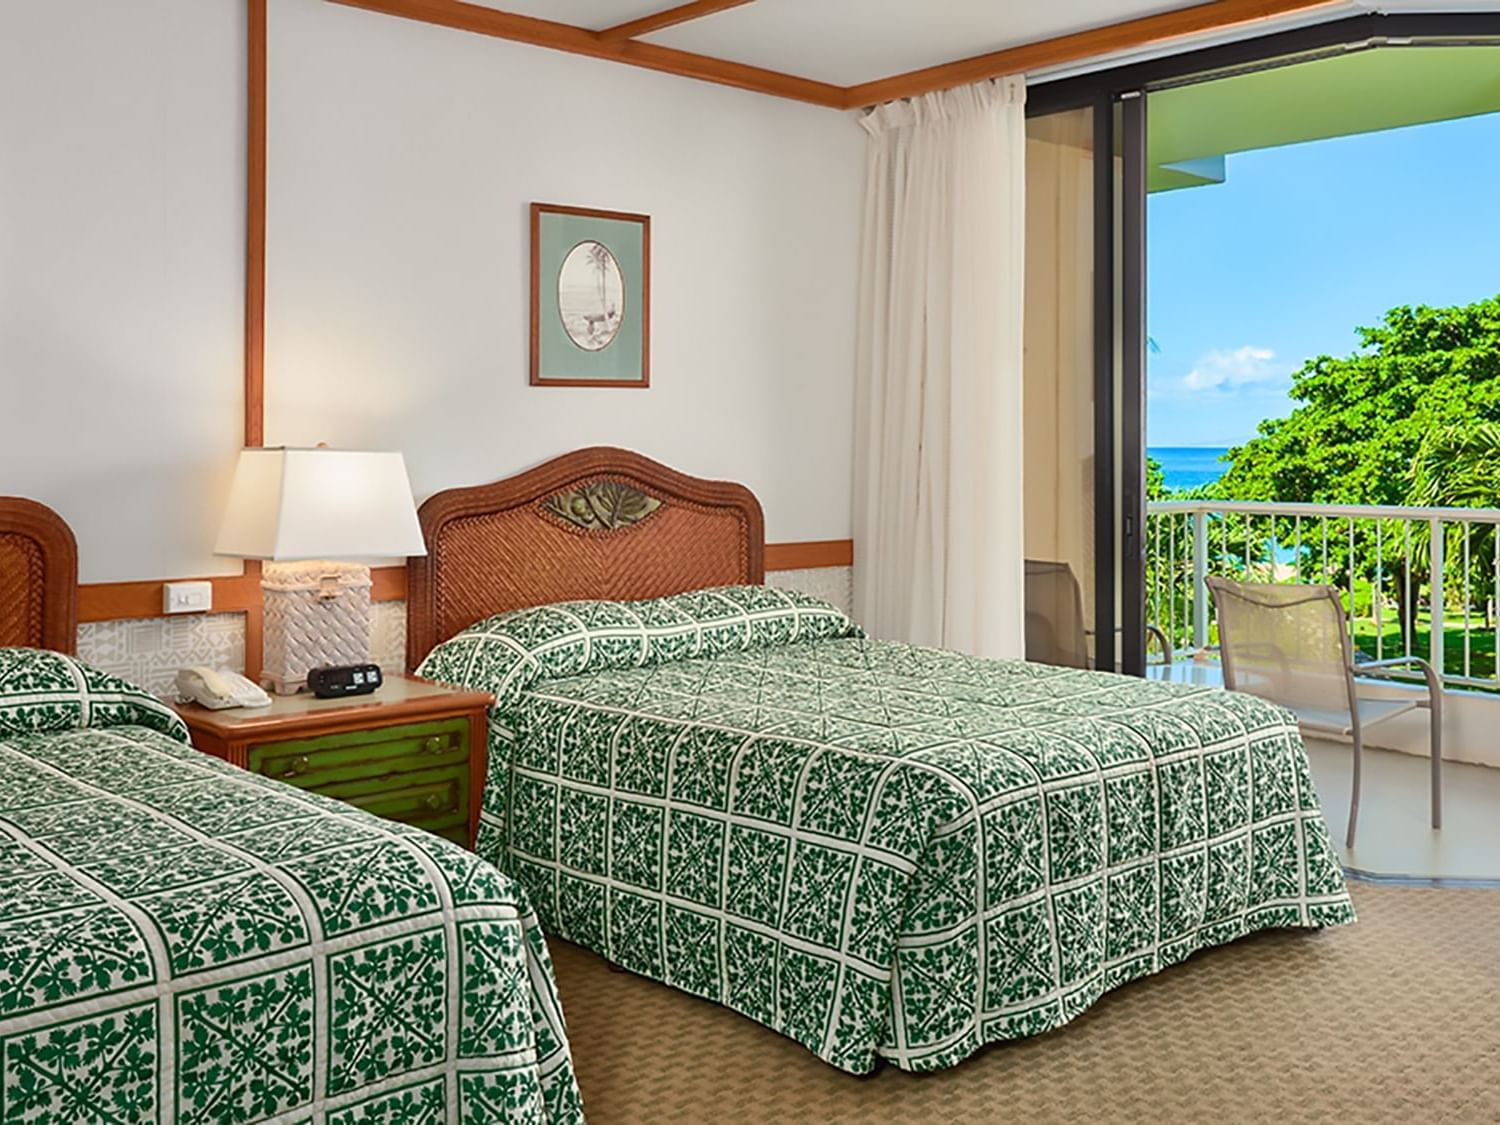 The Partial Ocean View Room at Ka'anapali Beach Hotel Hawaii